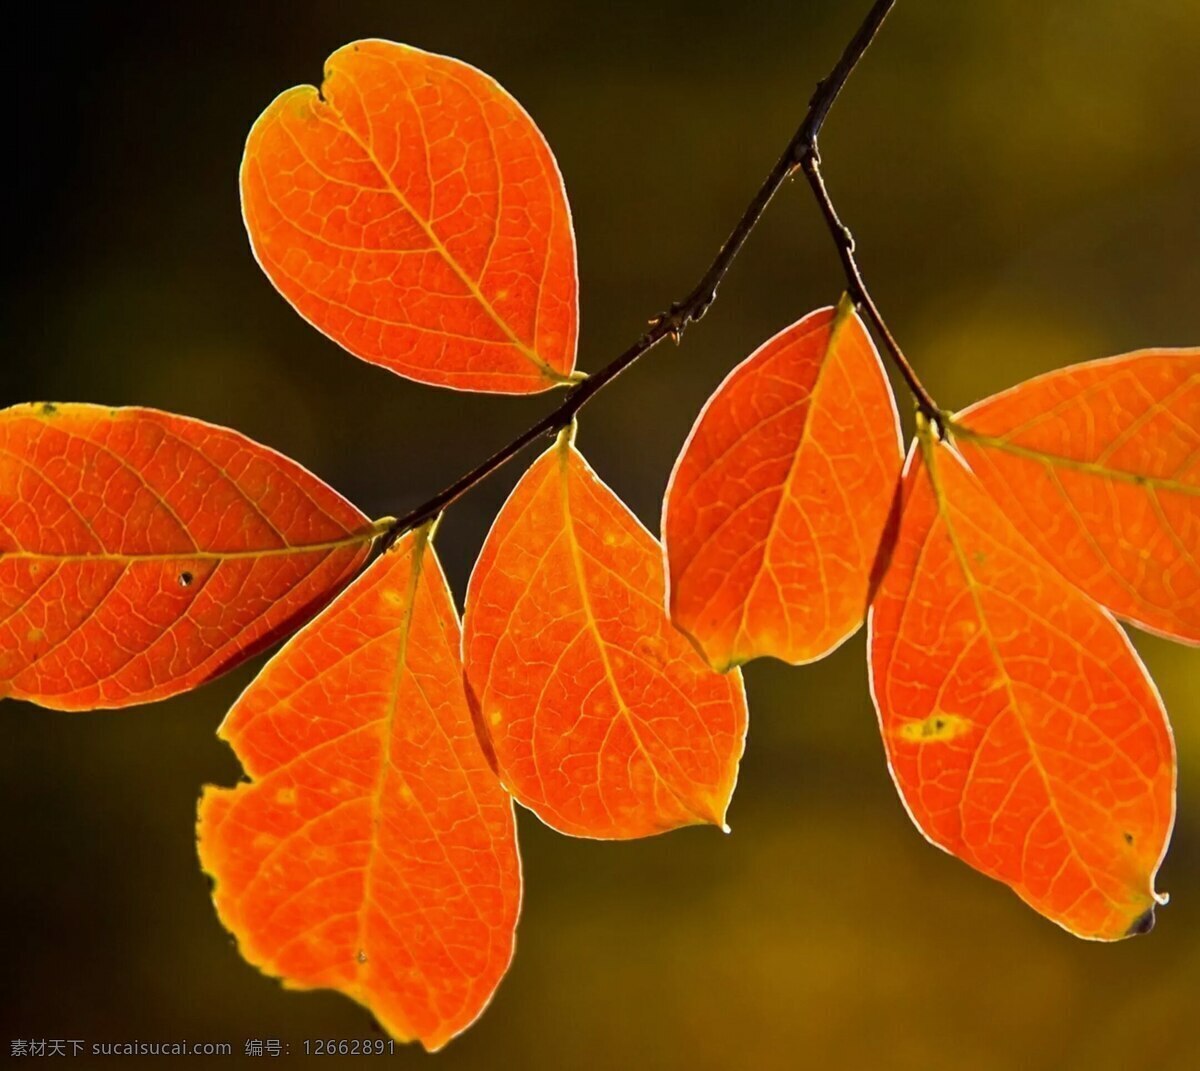 秋天黄叶 黄叶 秋天 叶子 树枝 叶子特写 自然景观 自然风景